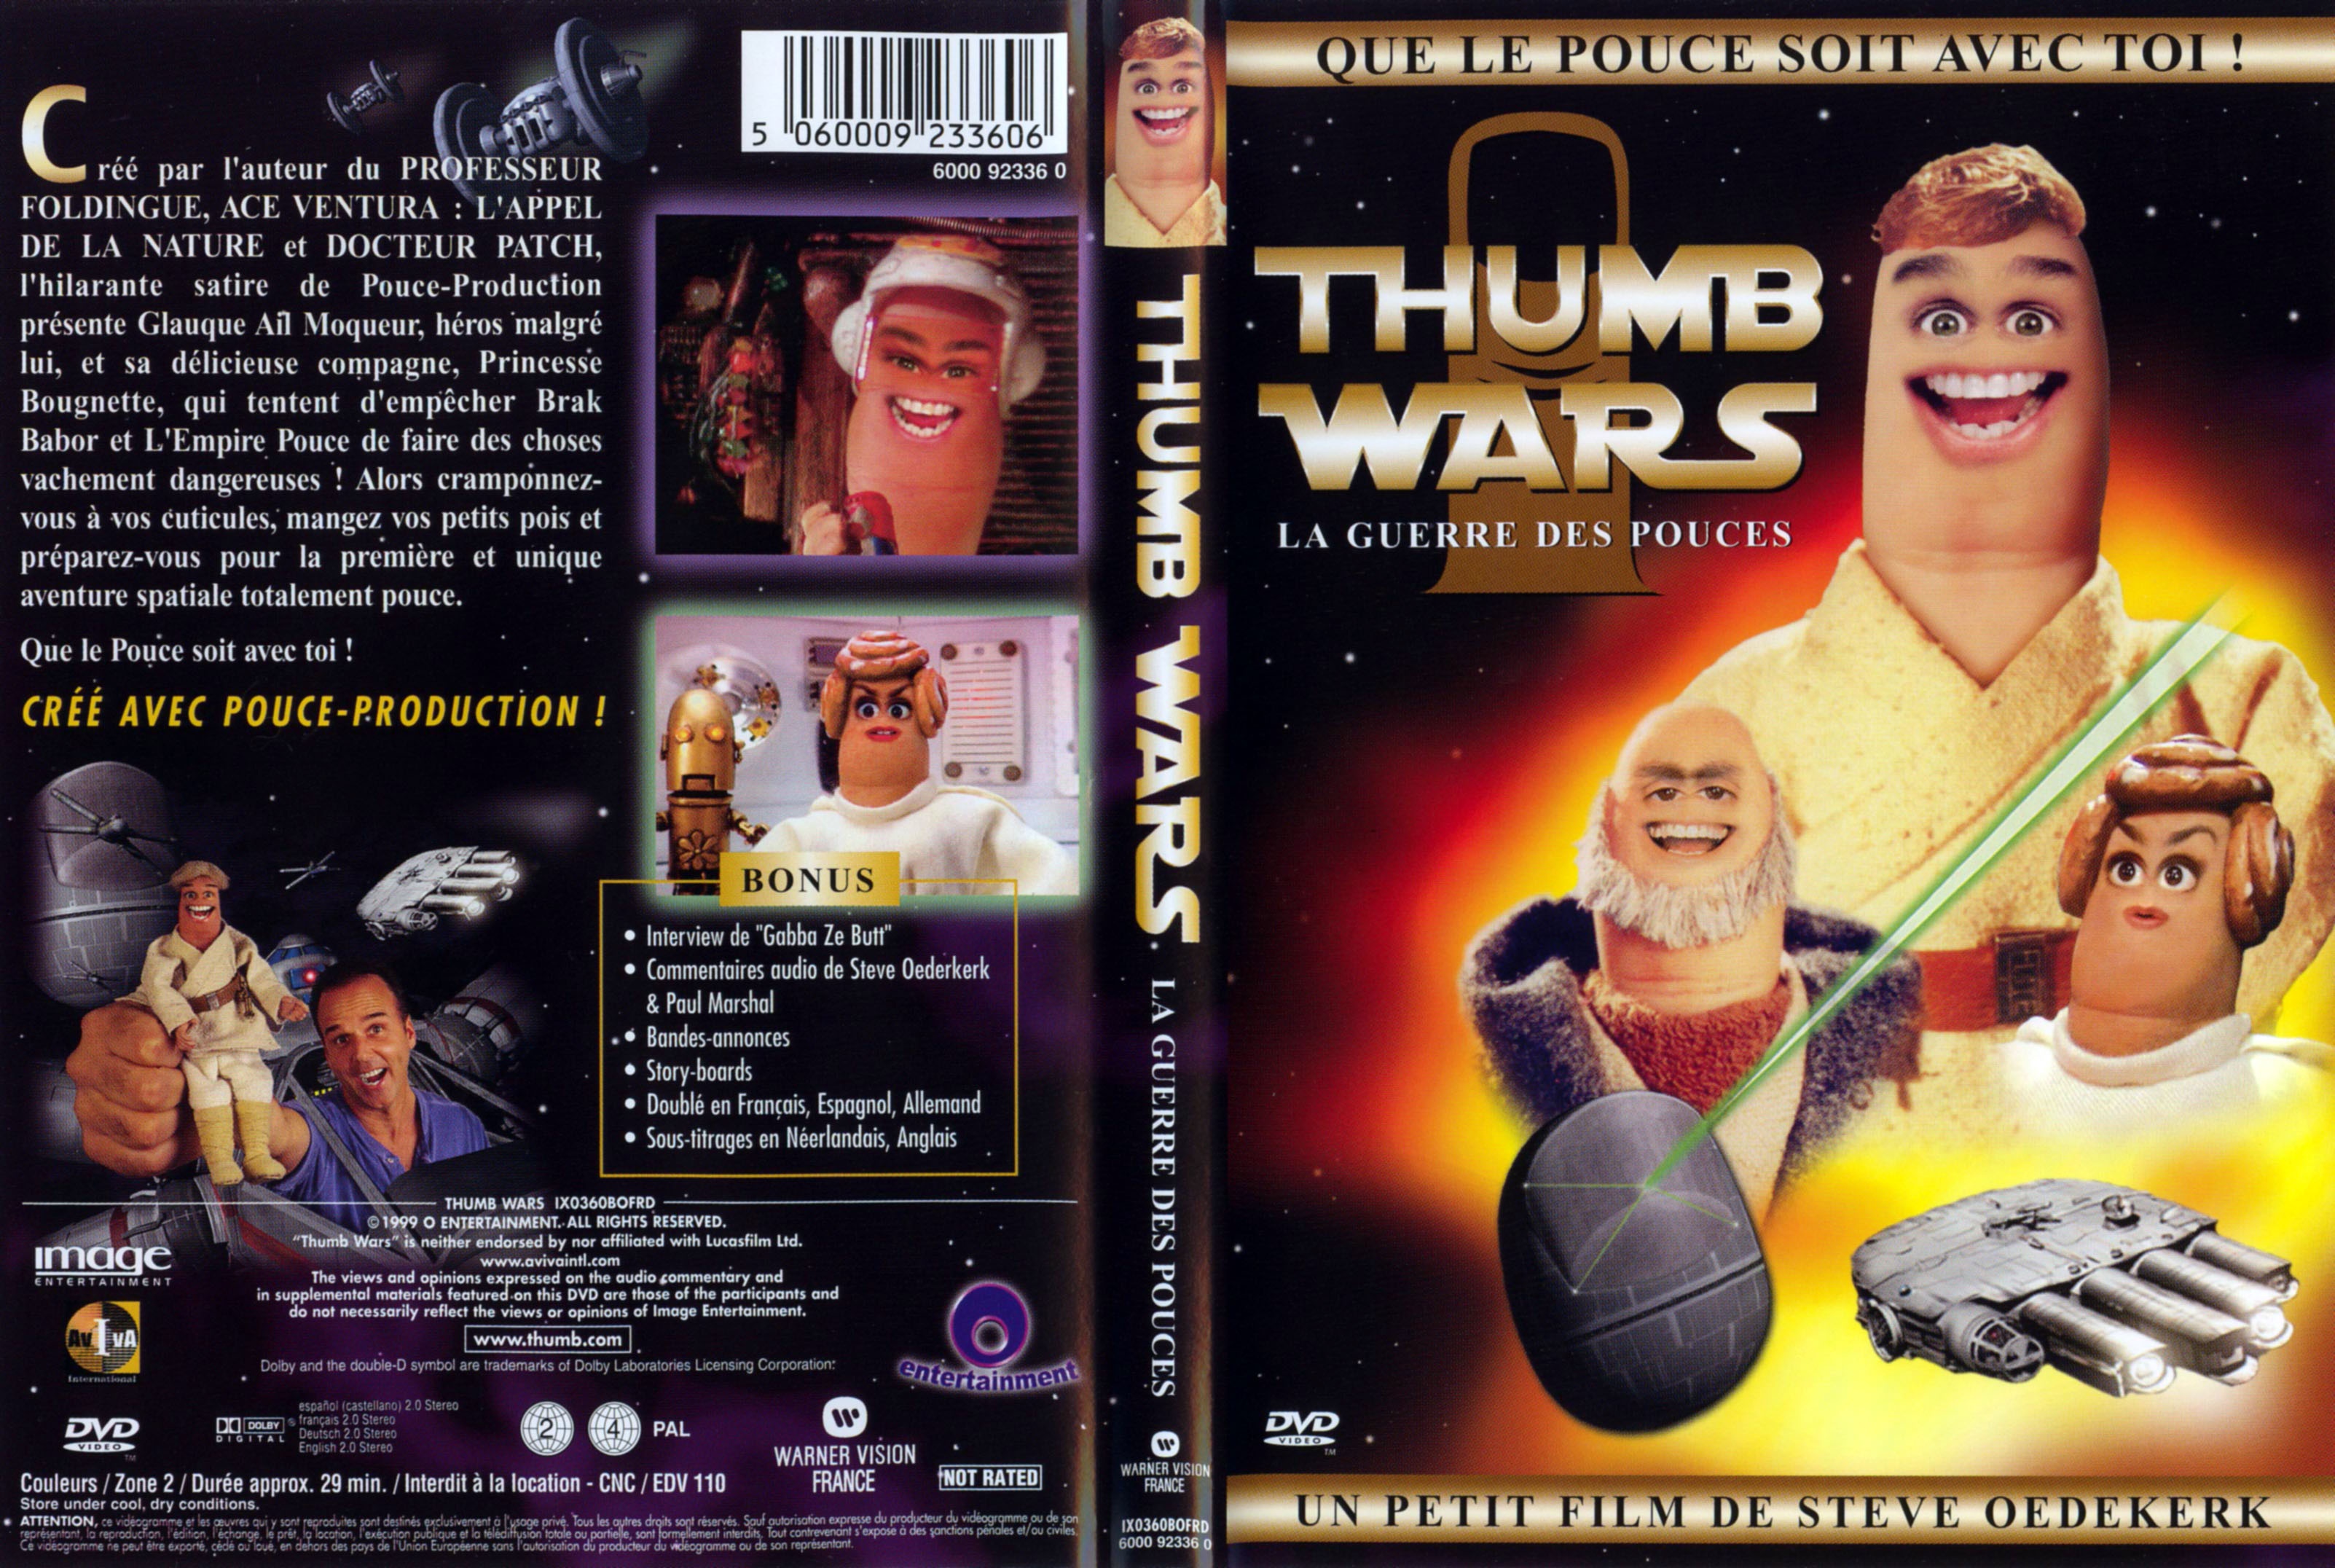 Jaquette DVD Thumb wars la guerre des pouces